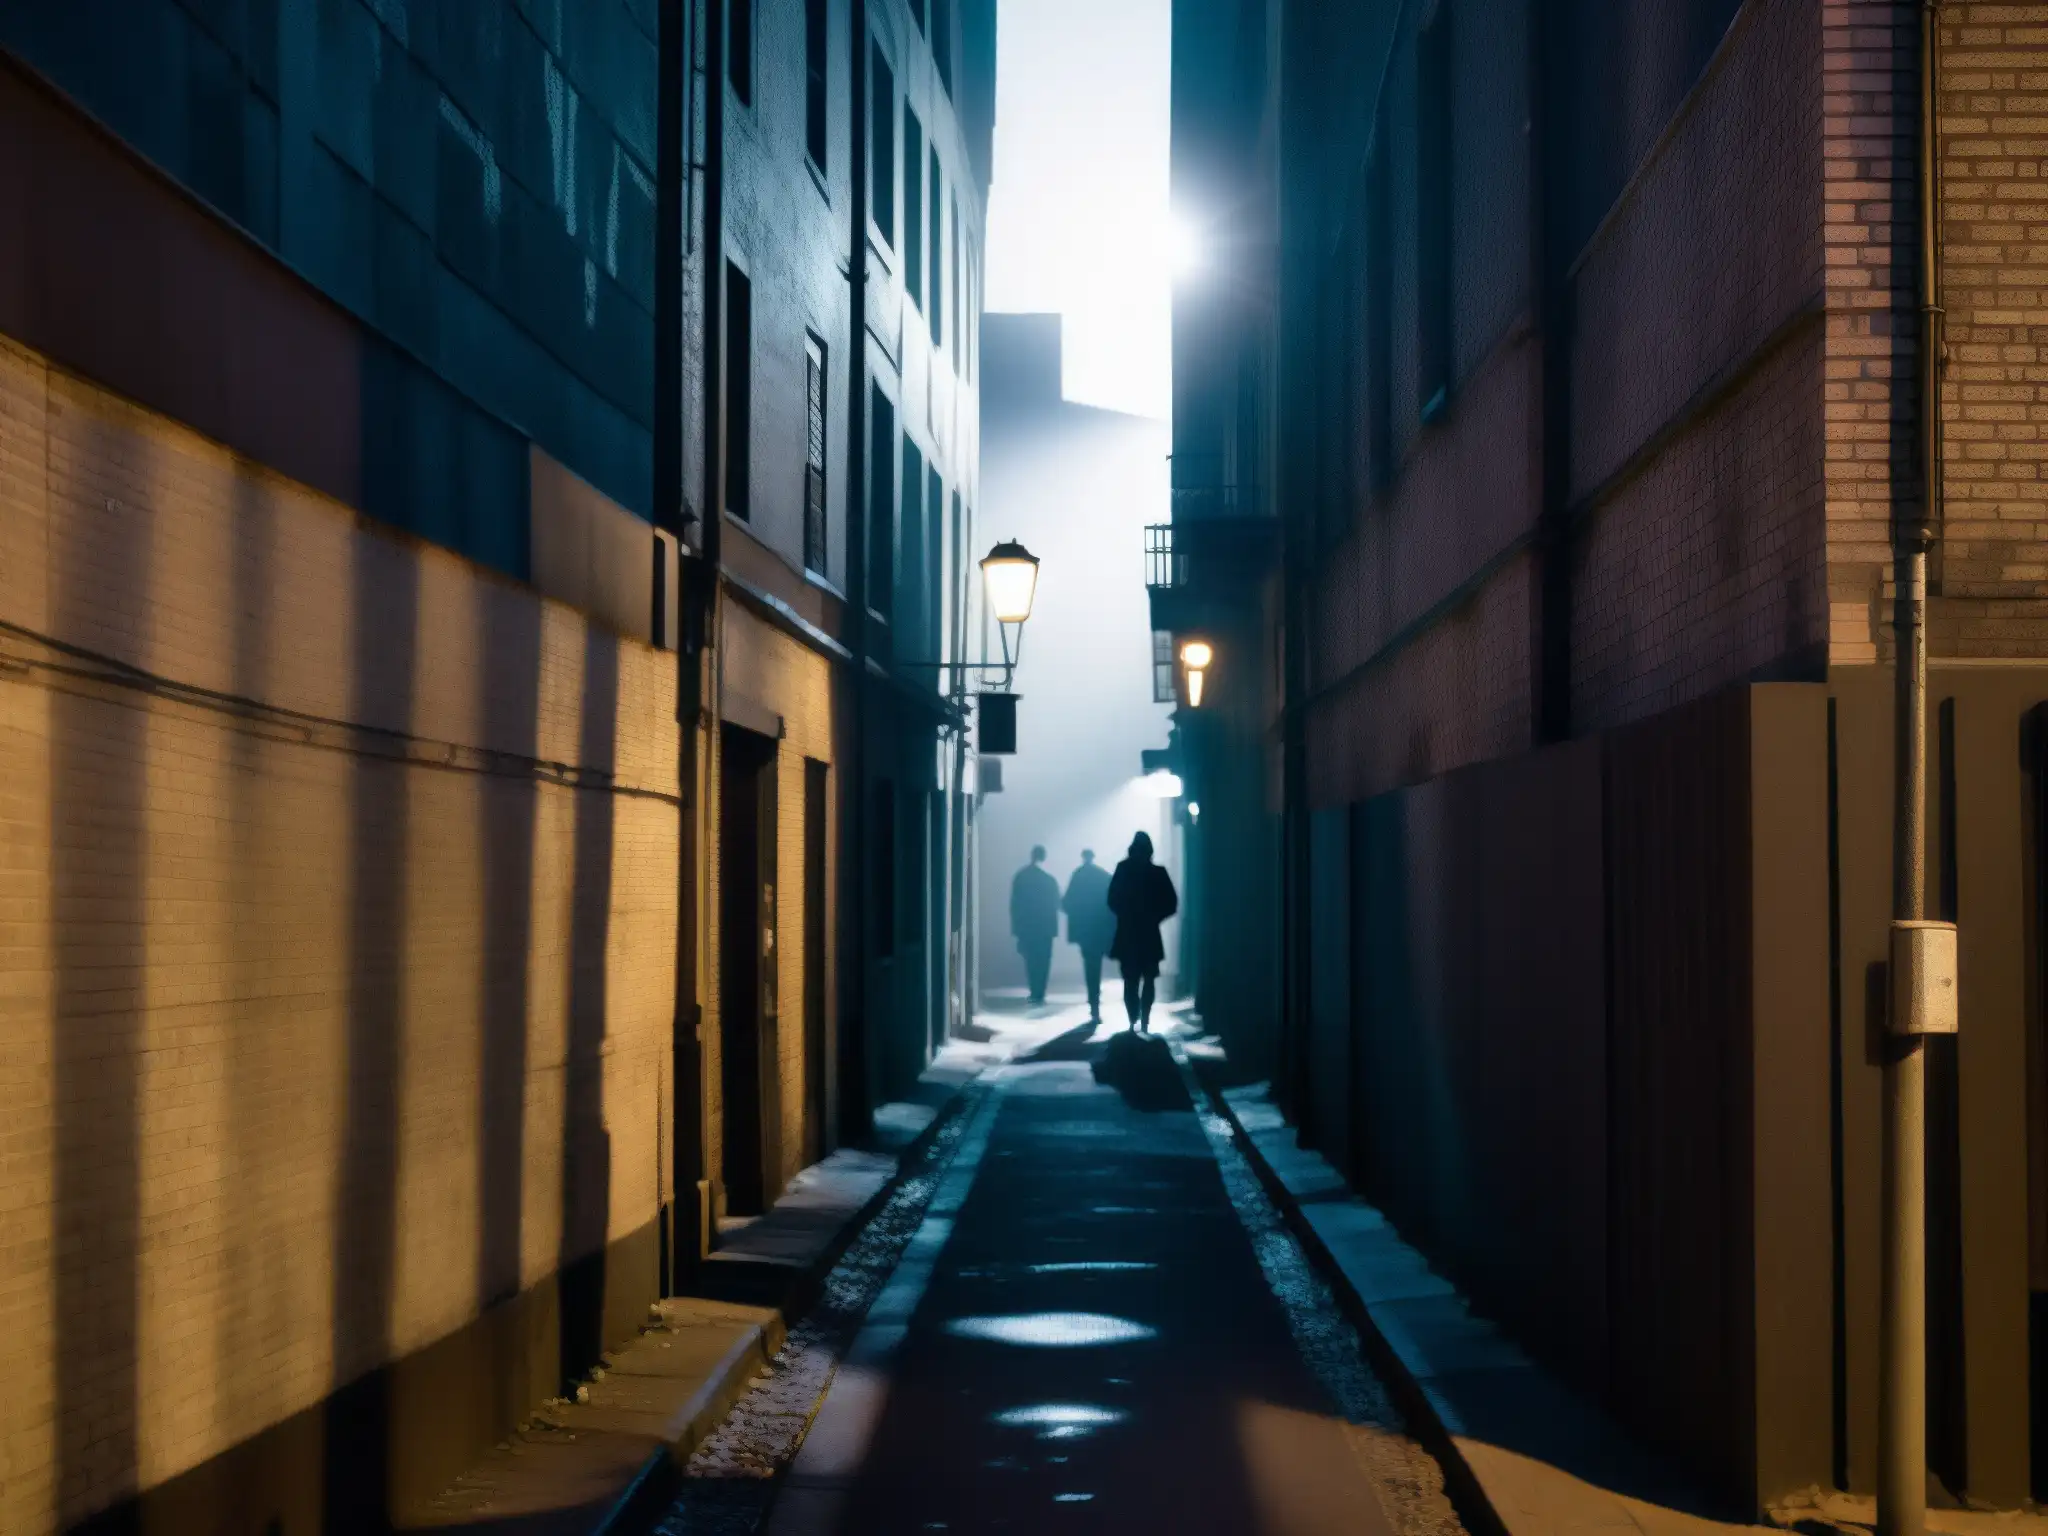 Un callejón urbano oscuro, iluminado por luces parpadeantes que proyectan sombras inquietantes